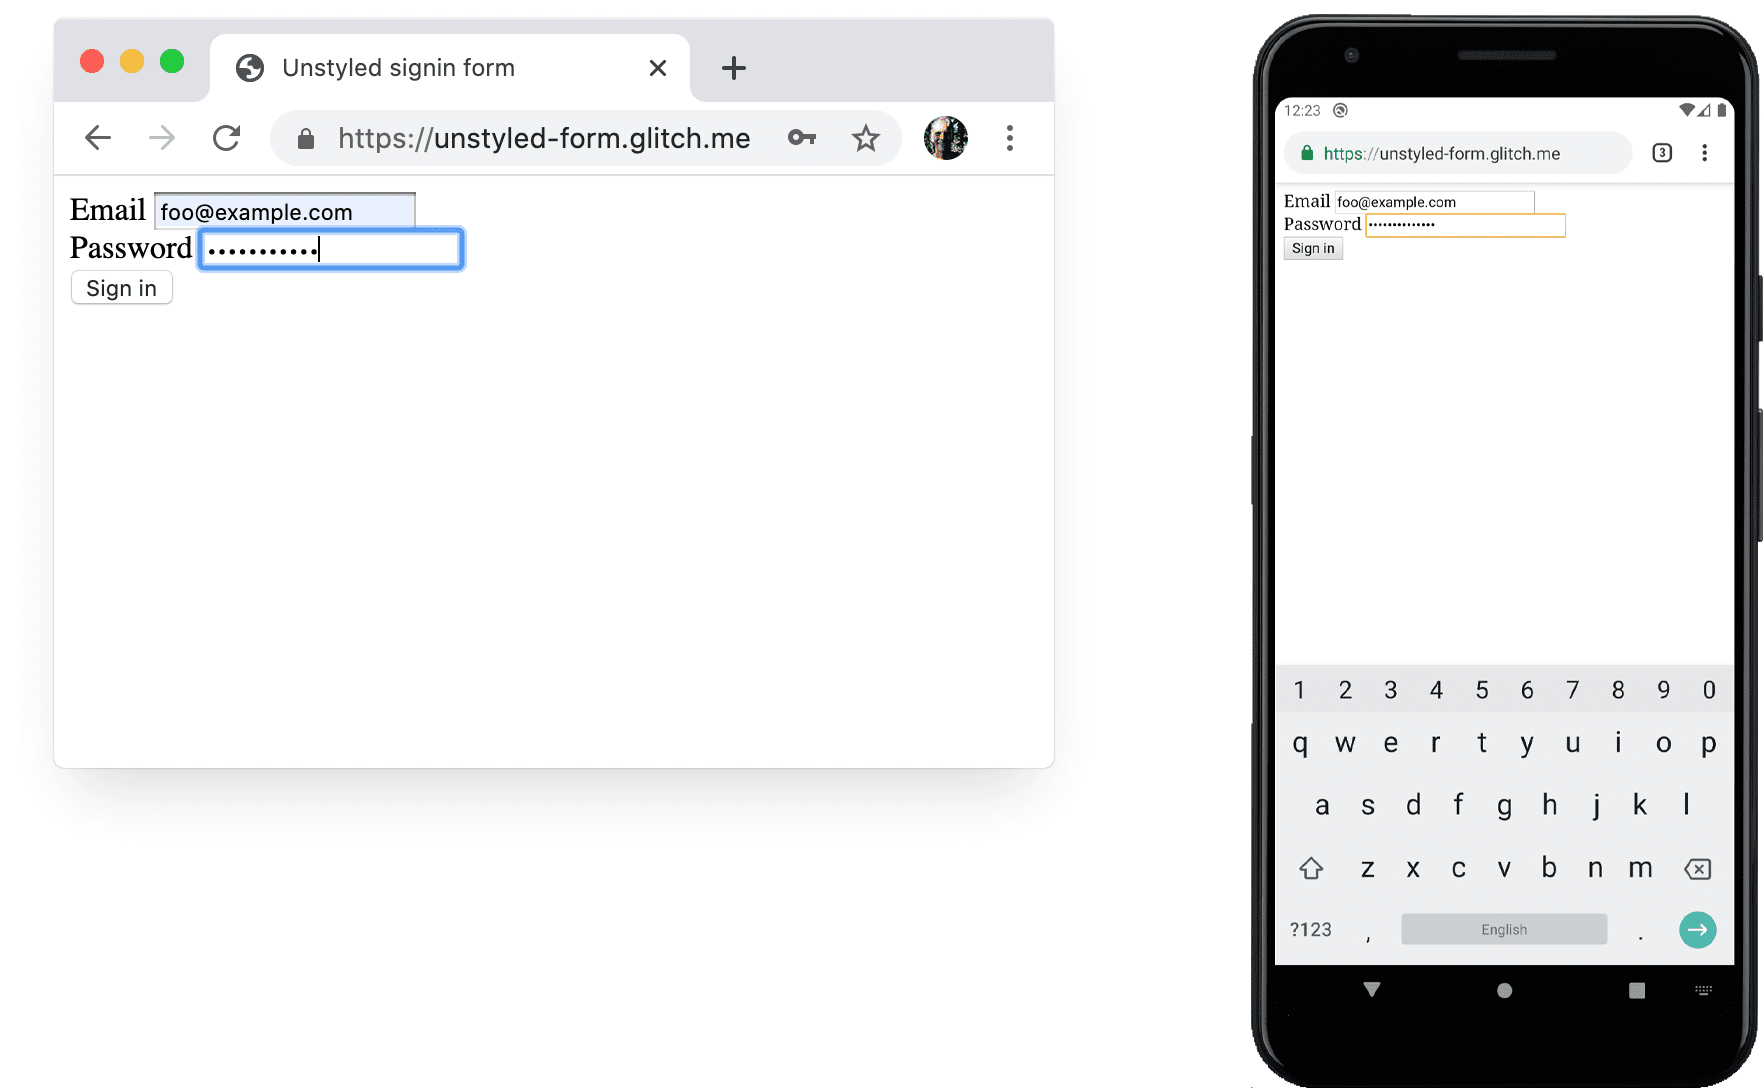 Снимок экрана нестилизованной формы в Chrome на компьютере и на Android.